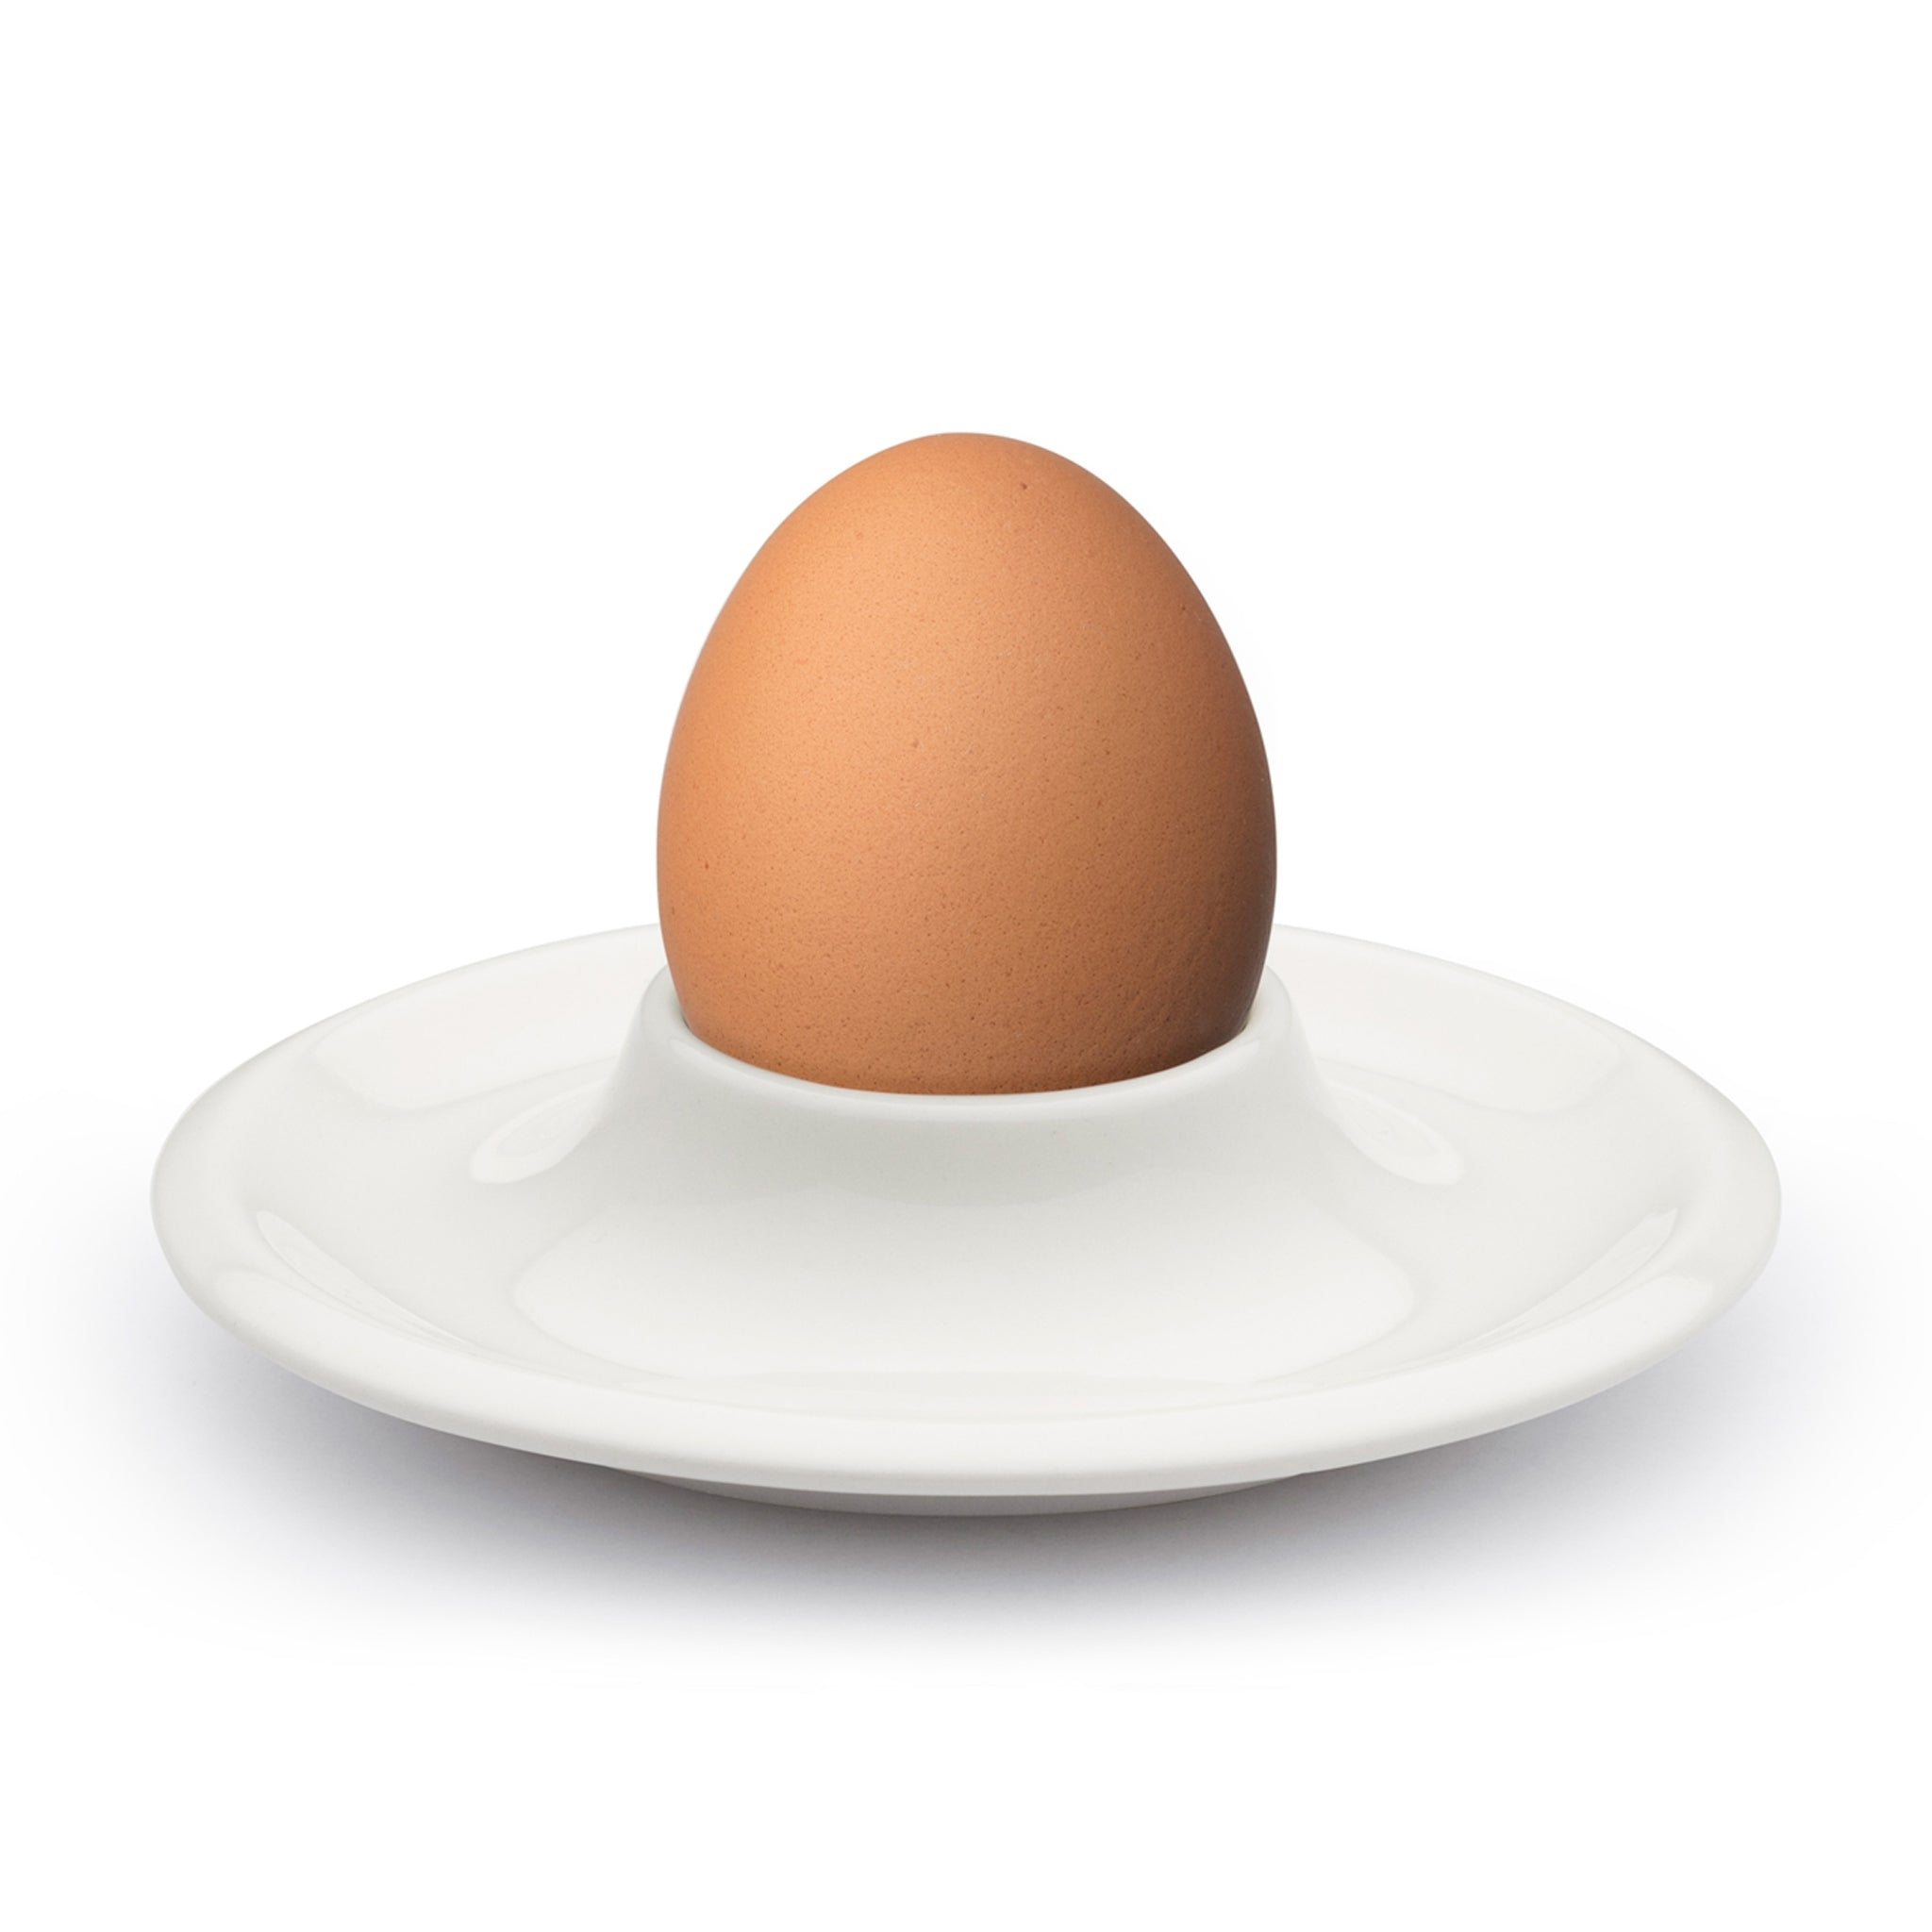 Raami Egg Cup by Iittala